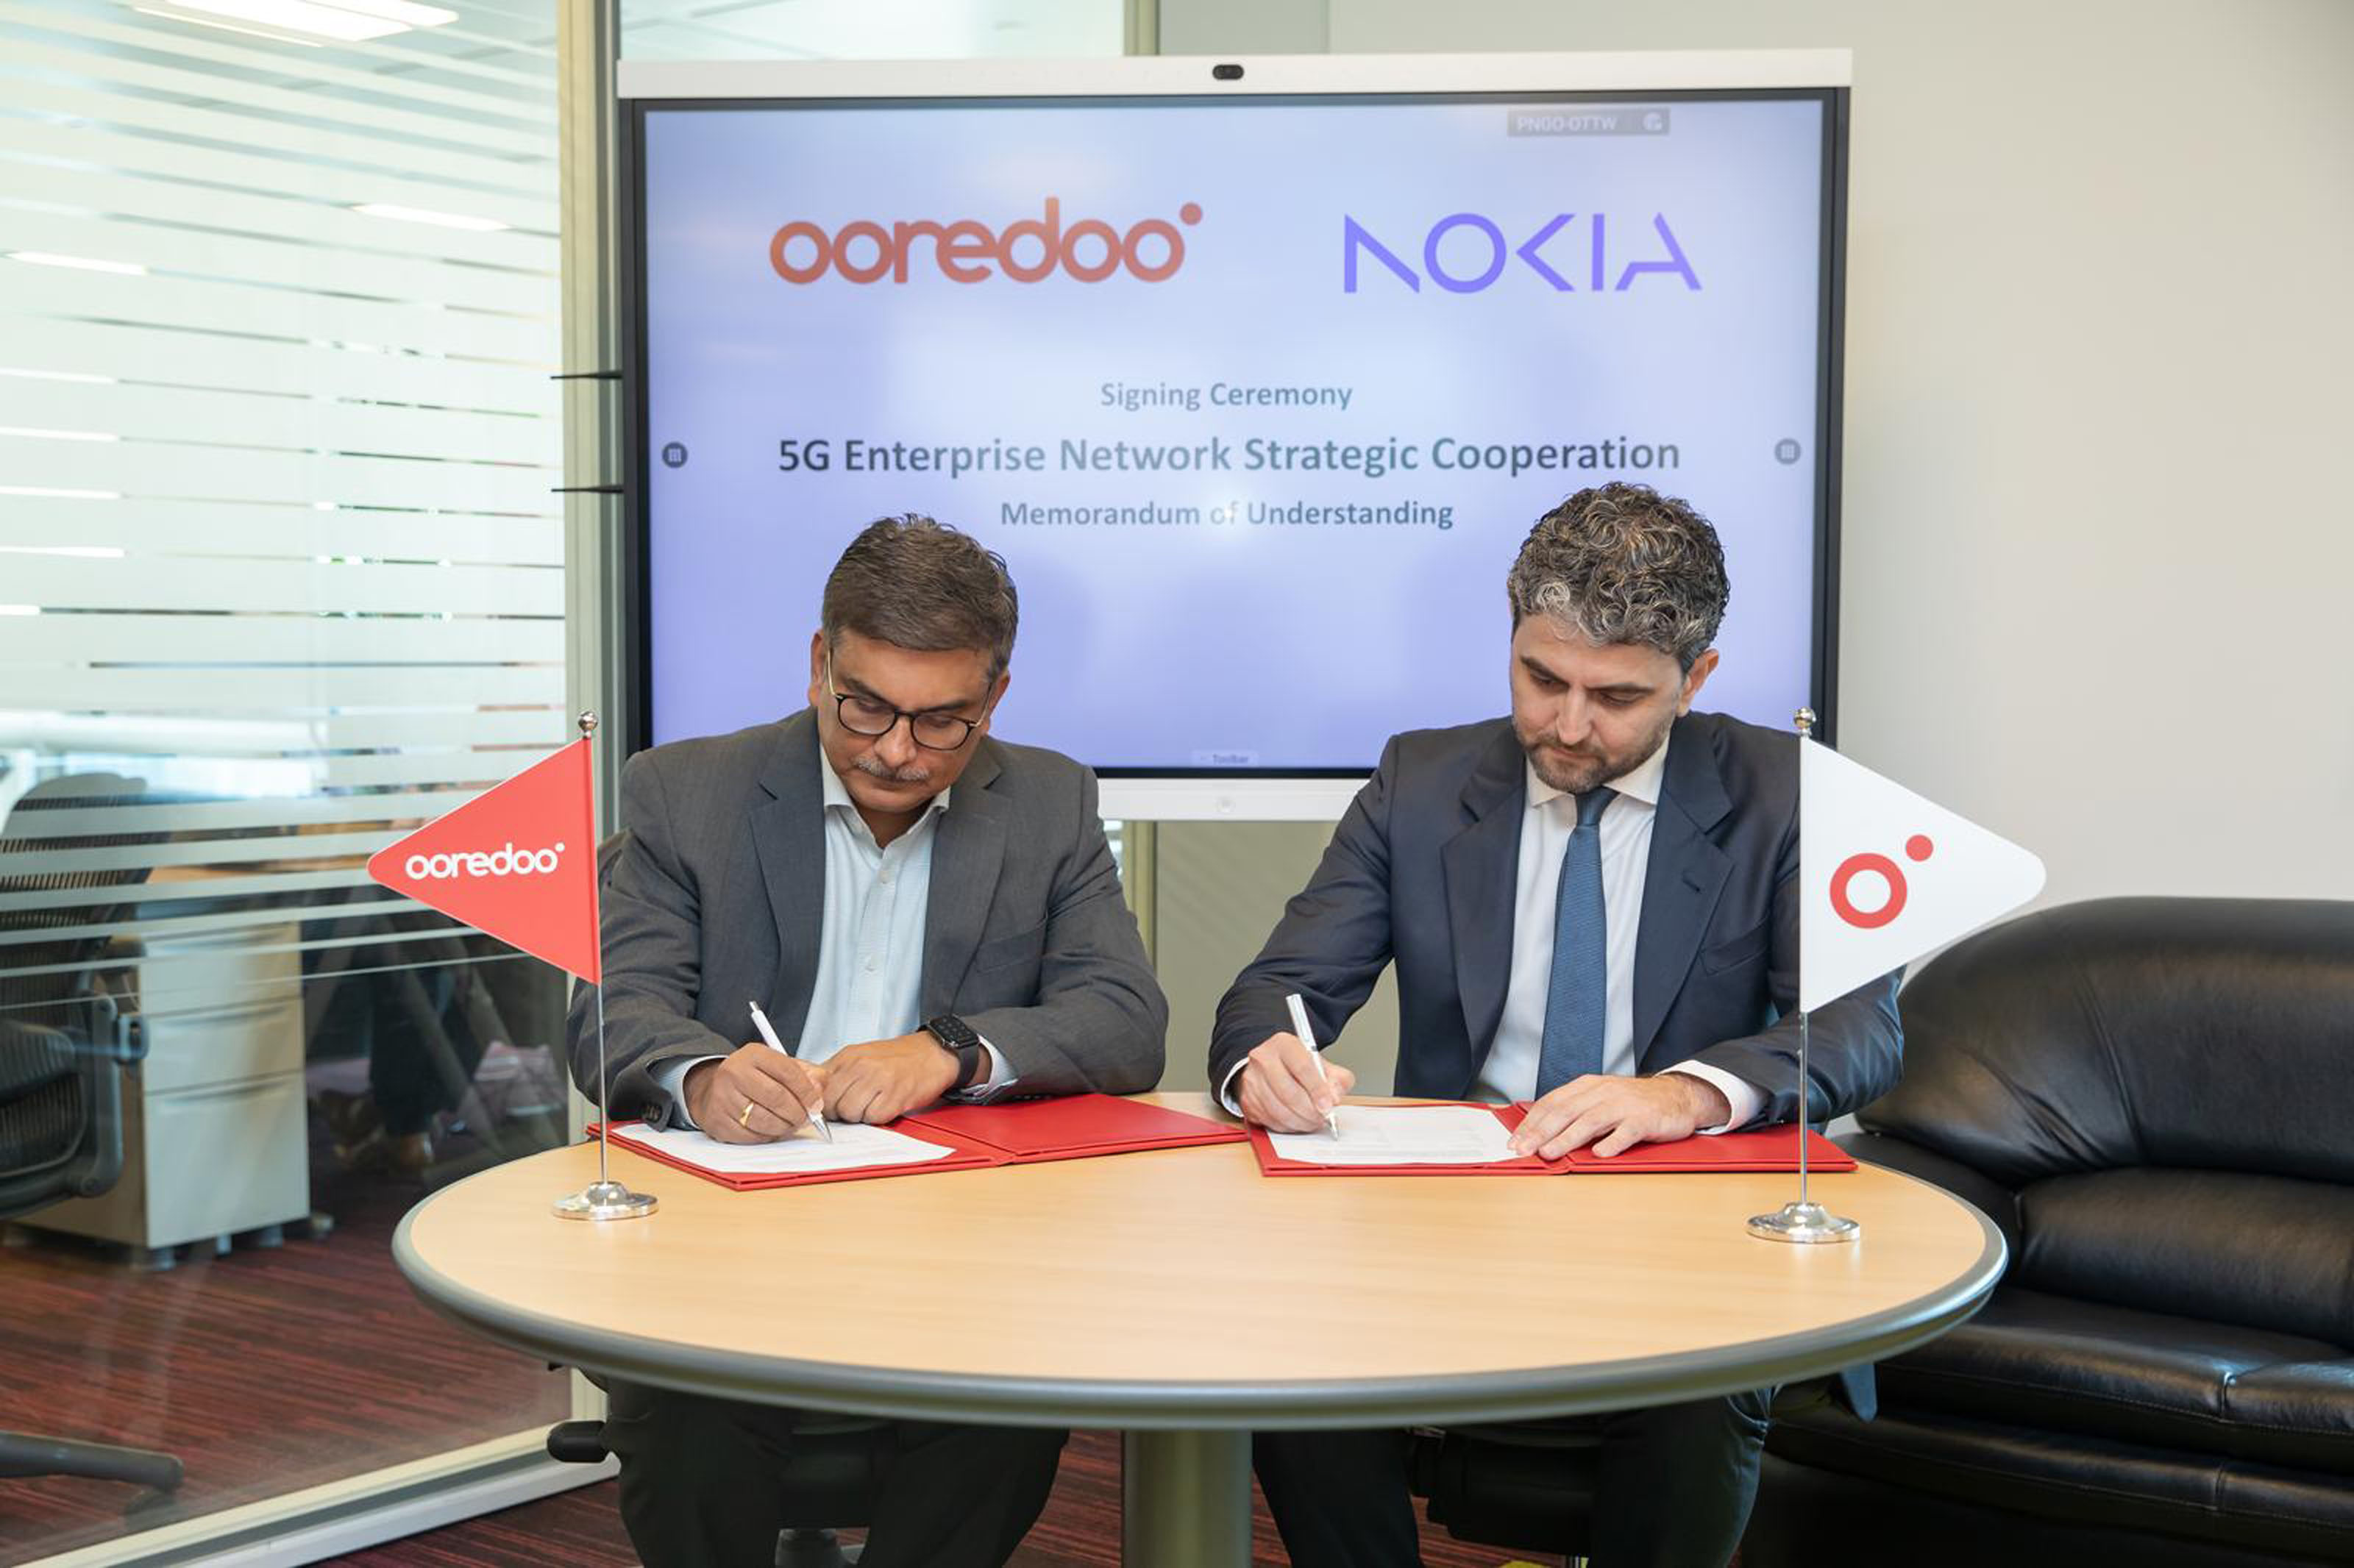 مجموعة Ooredoo تبرم شراكة مع نوكيا لتحديث خدمات الاتصال شريك ابتكار شبكات الجيل الخامس 5G في المؤسسات